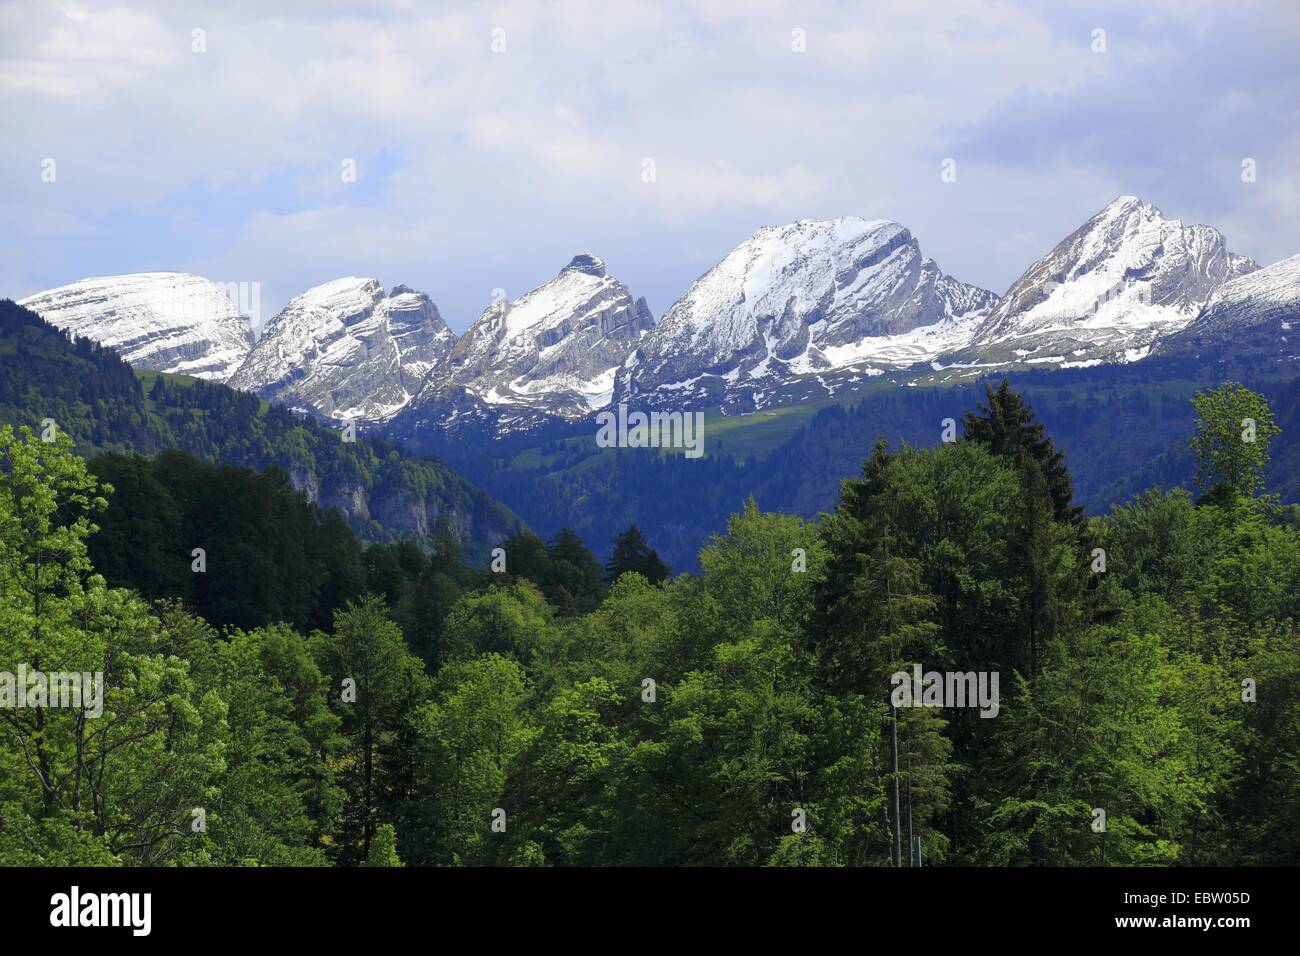 La chaîne de montagnes de Churfirsten les Alpes, Suisse Appenzell, Saint-Gall, Toggenburg Banque D'Images